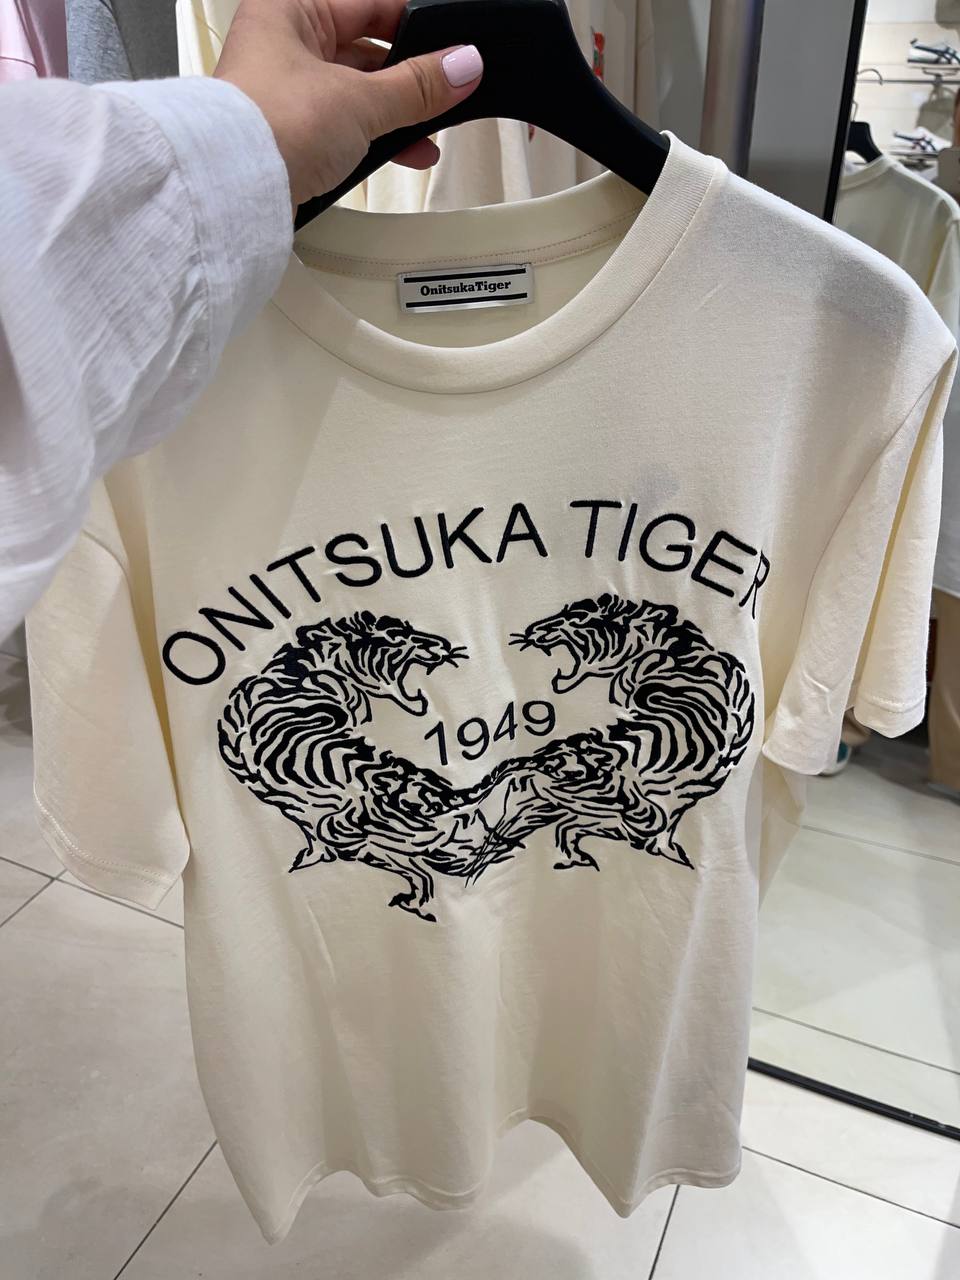 Футболки Onitsuka Tiger - унисекс. &lt;br&gt;
Цены от 9500 р title=